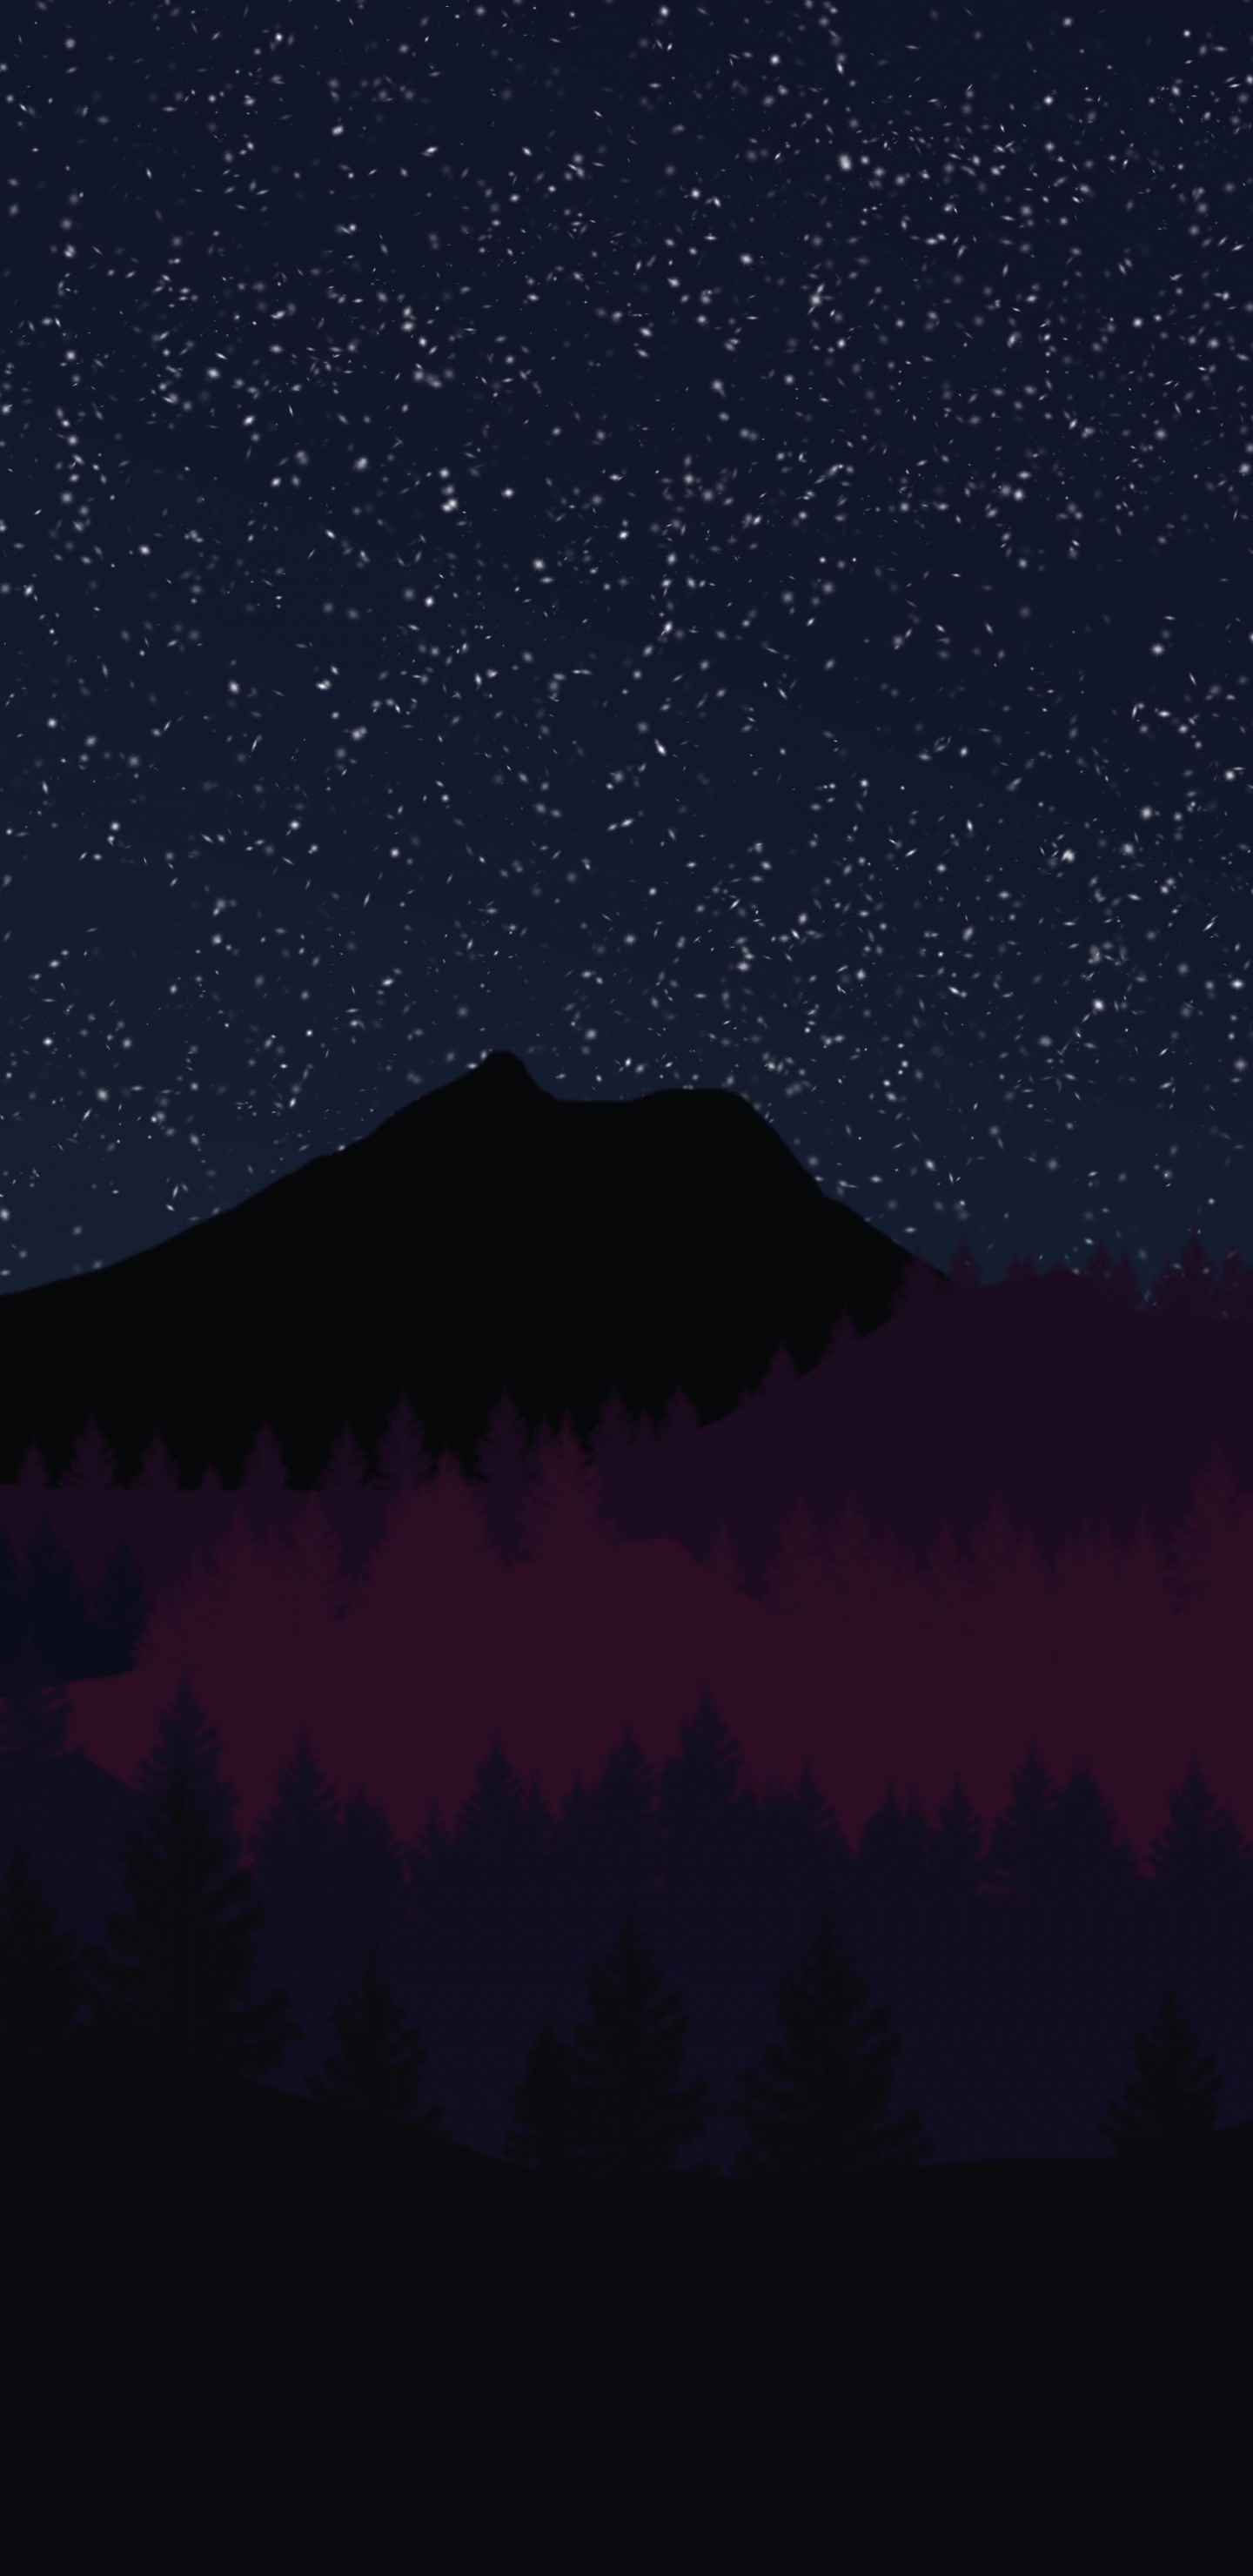 Silueta de Árboles Bajo la Noche Estrellada. Wallpaper in 1440x2960 Resolution